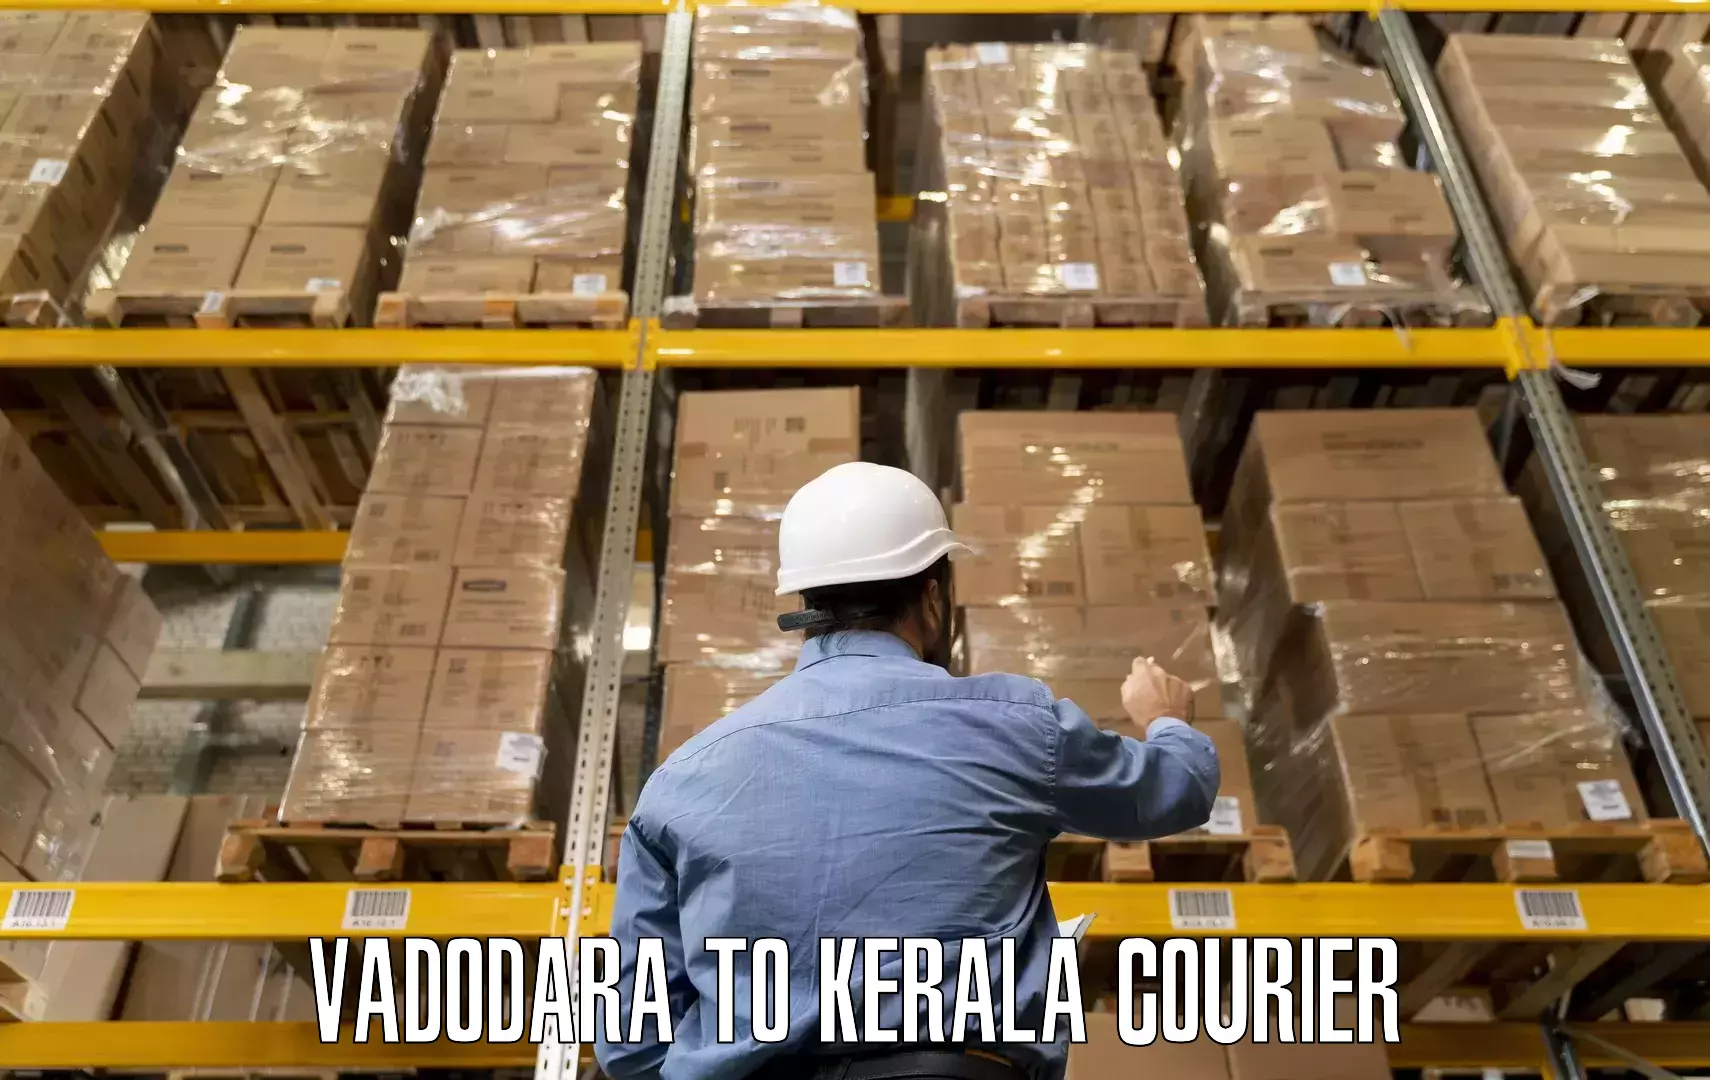 Furniture moving experts Vadodara to Mananthavady